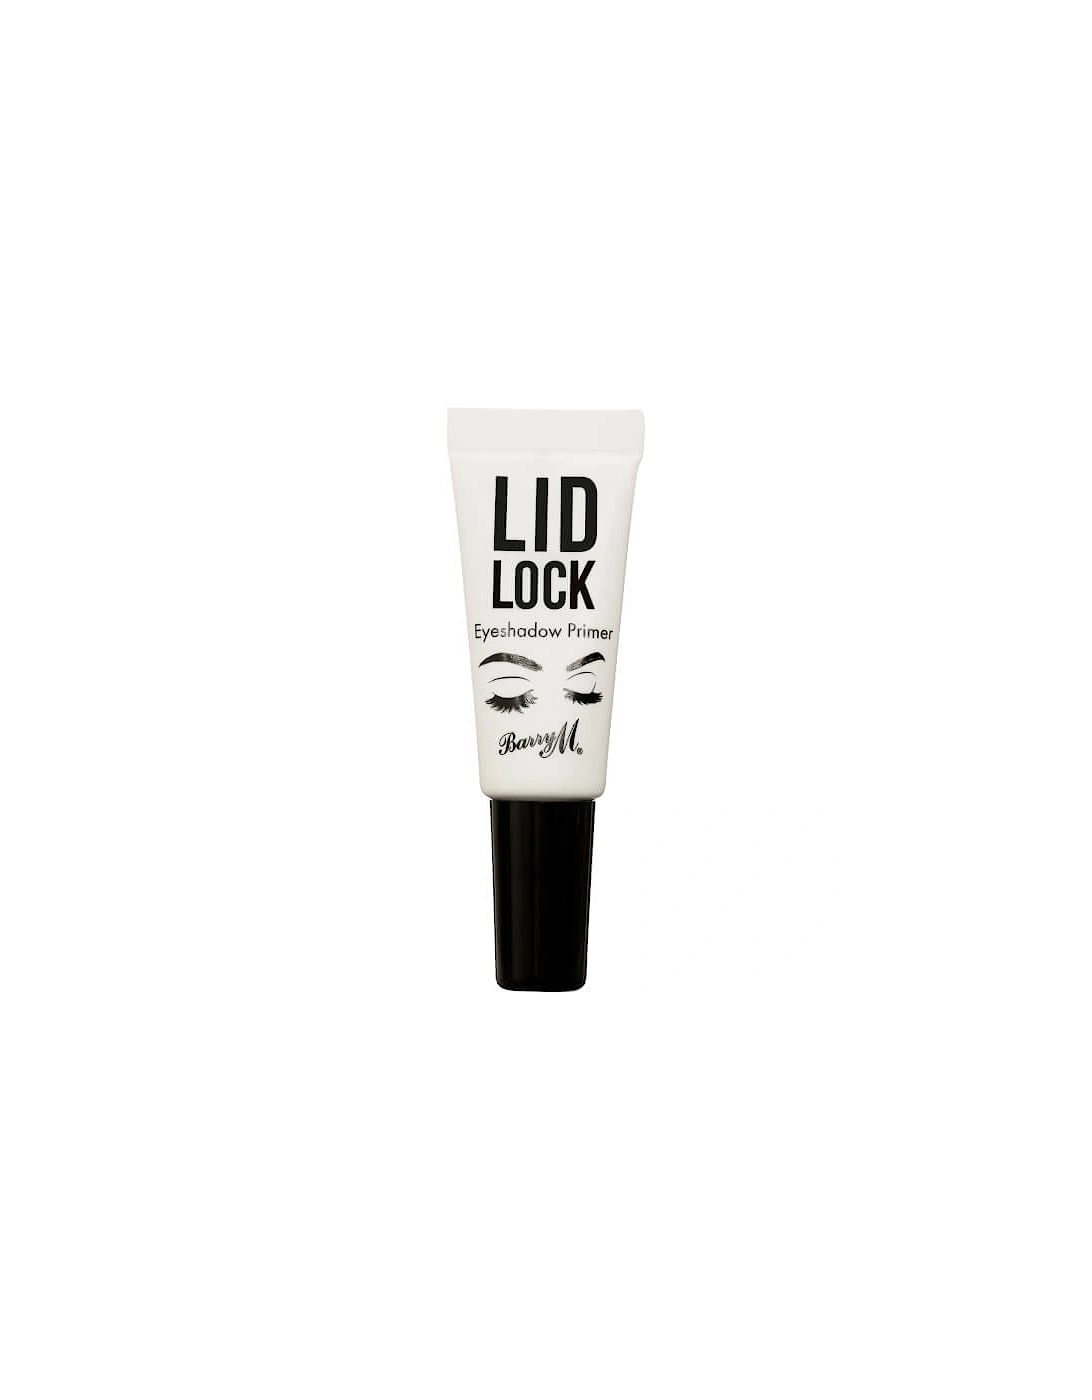 Lid Lock Eyeshadow Primer, 2 of 1